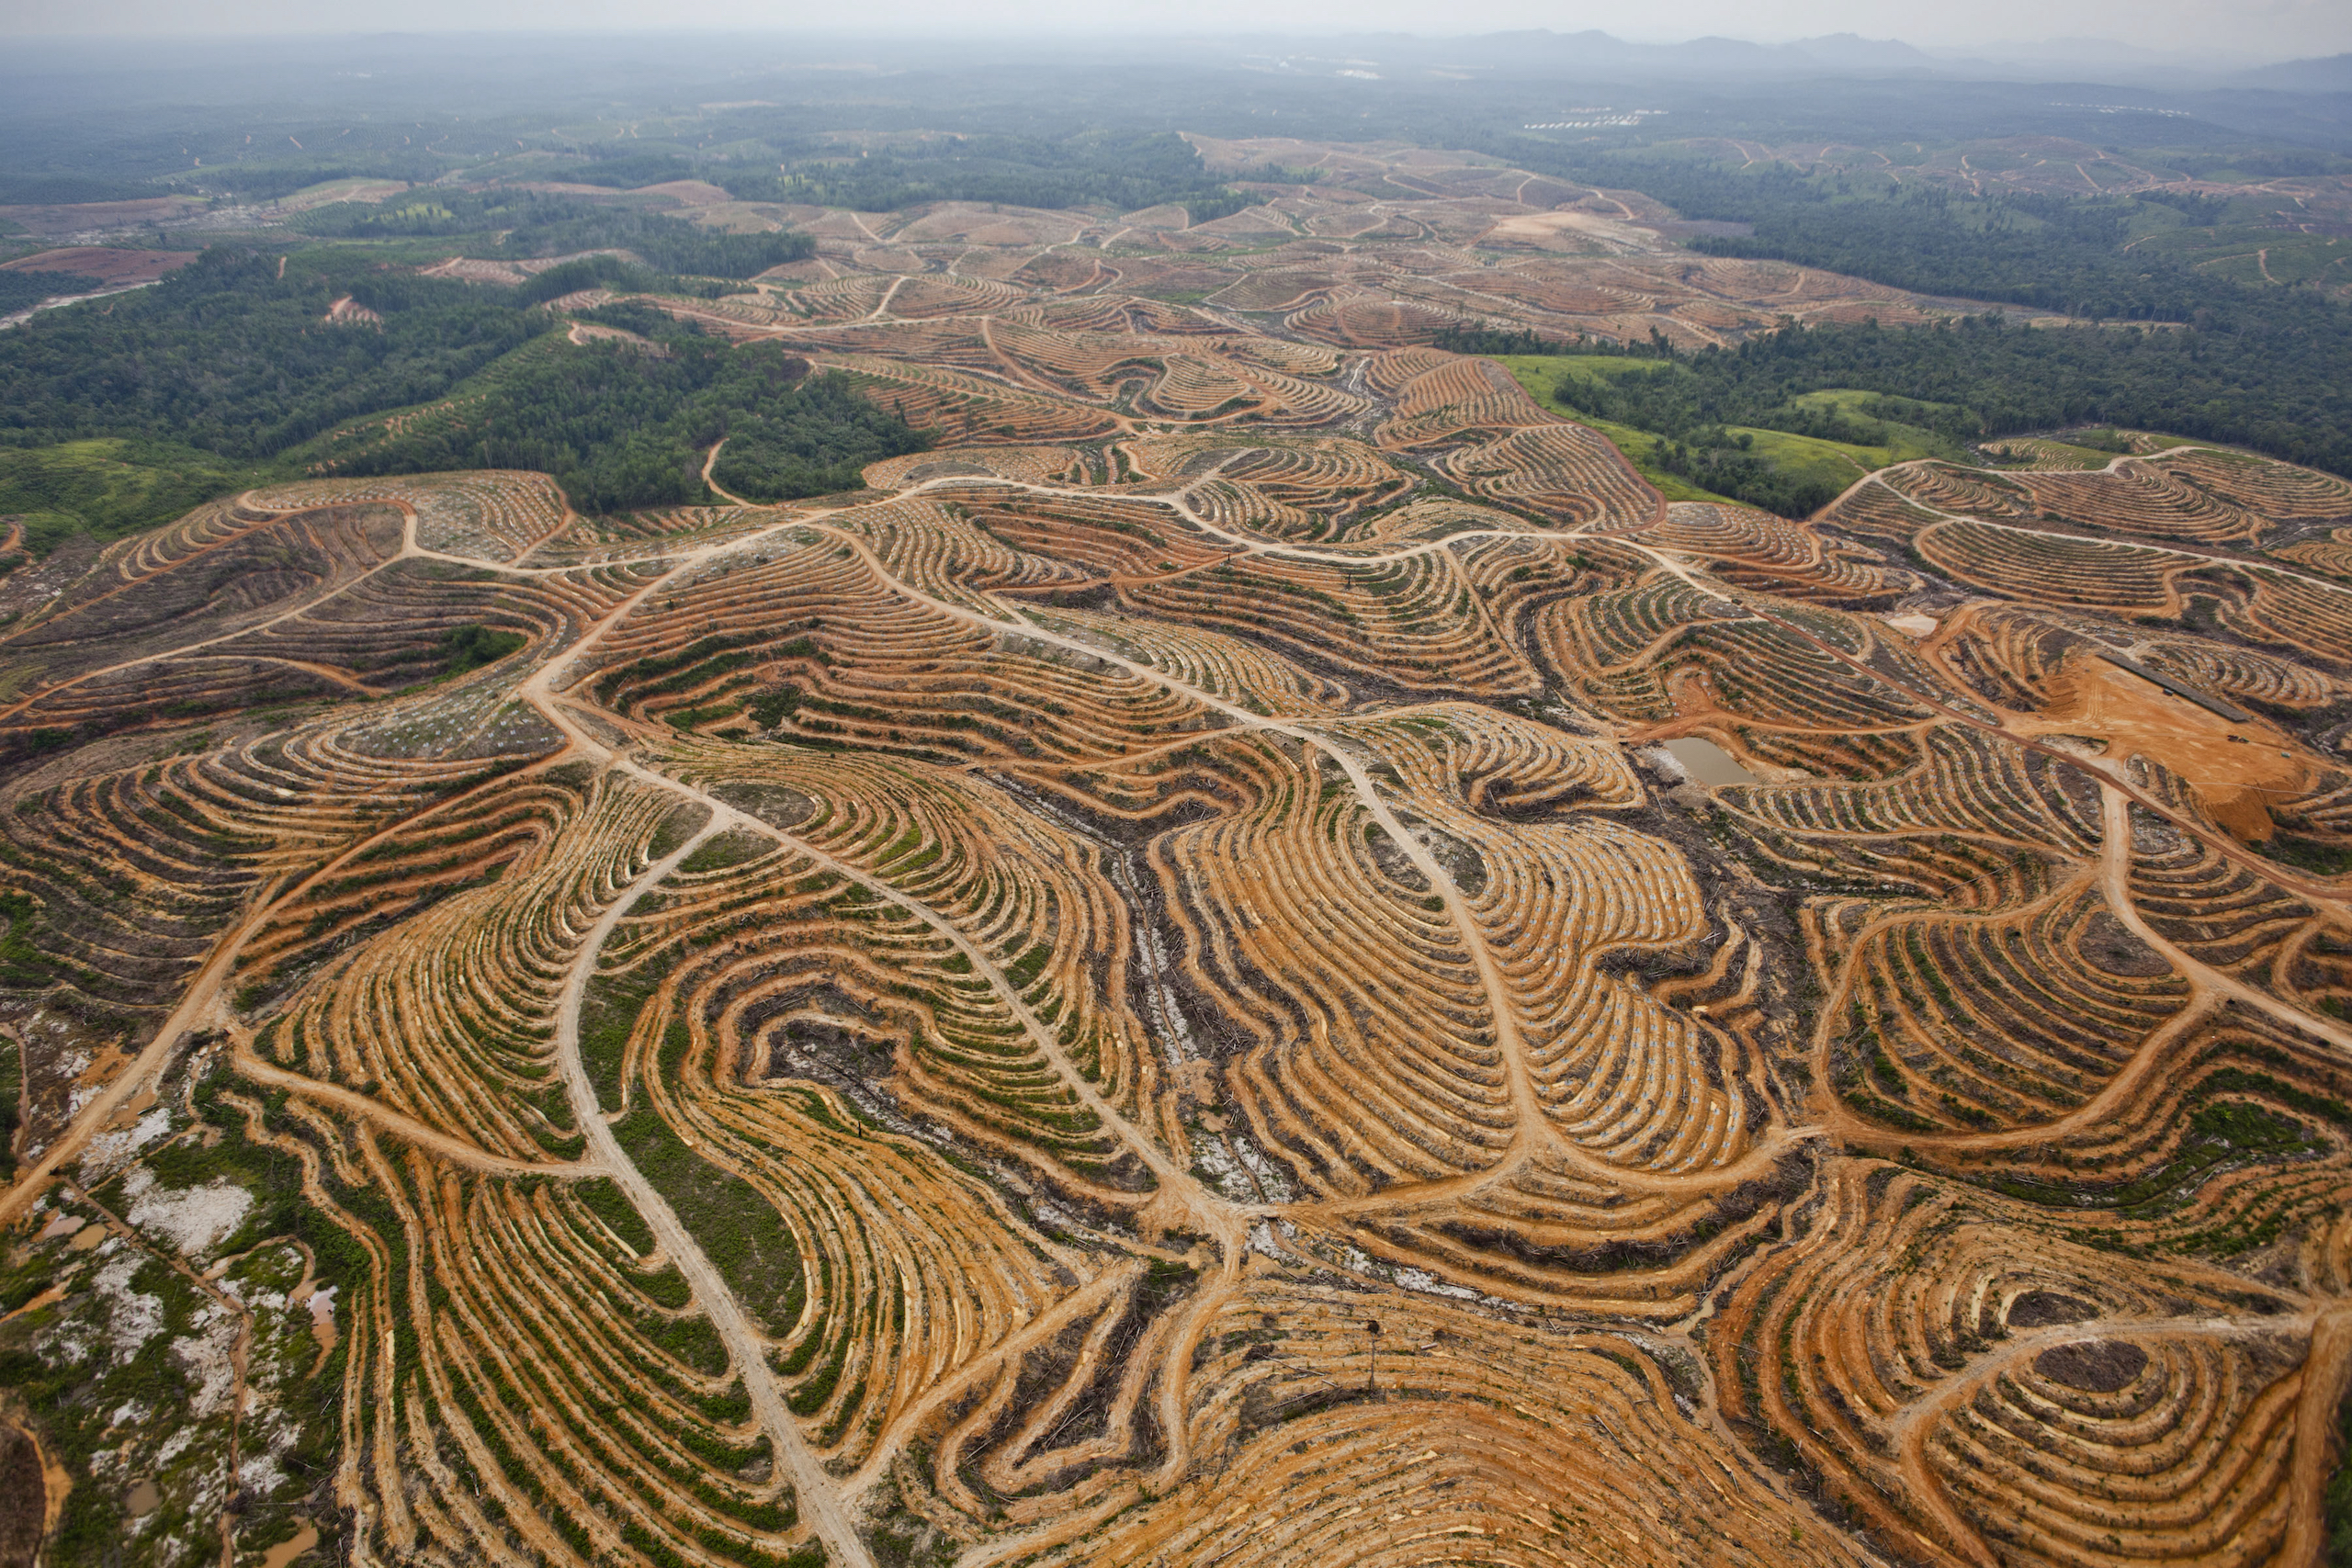 Deforestation in Central Kalimantan